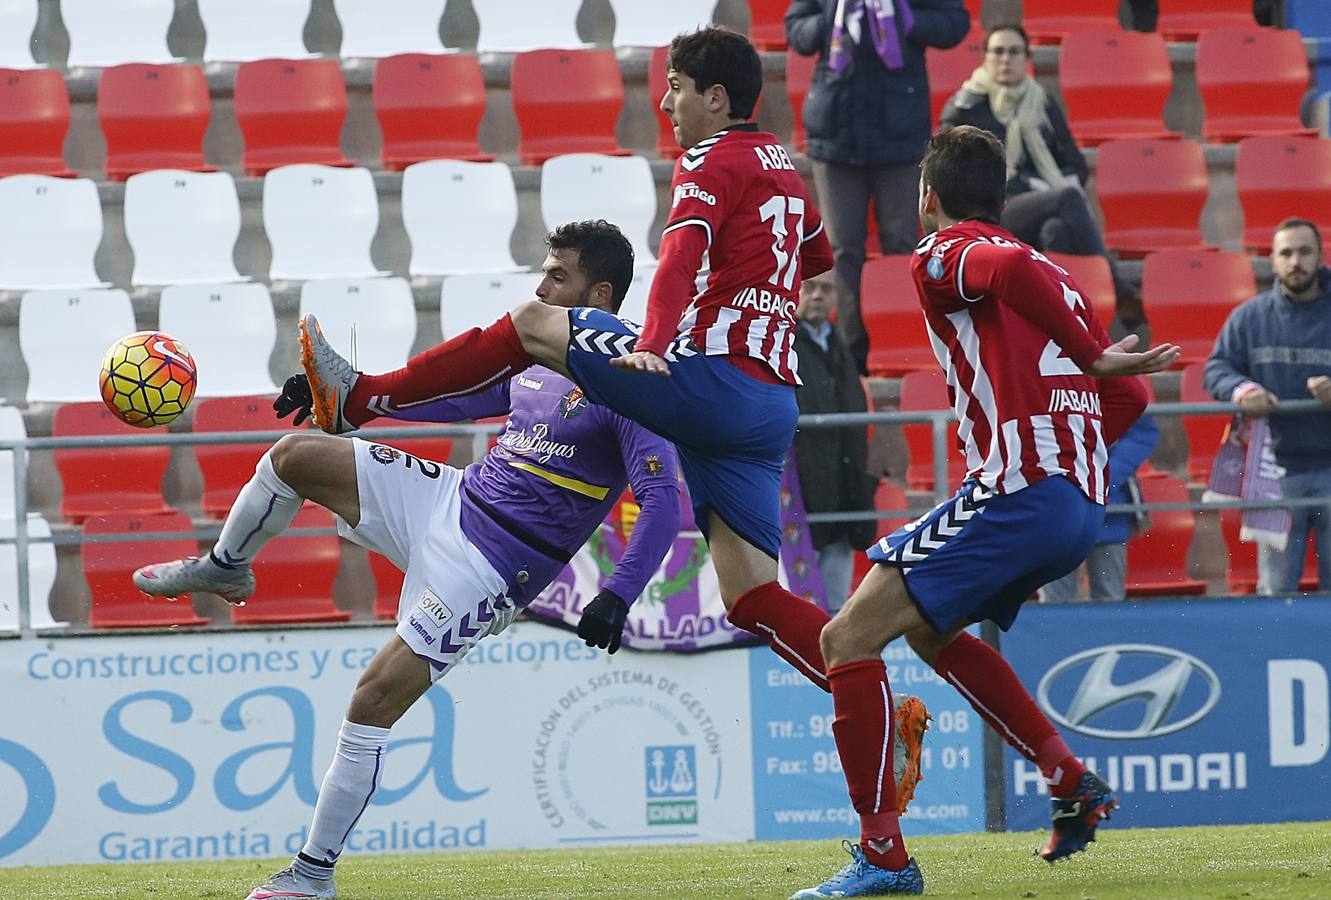 Lugo 1-1 Real Valladolid